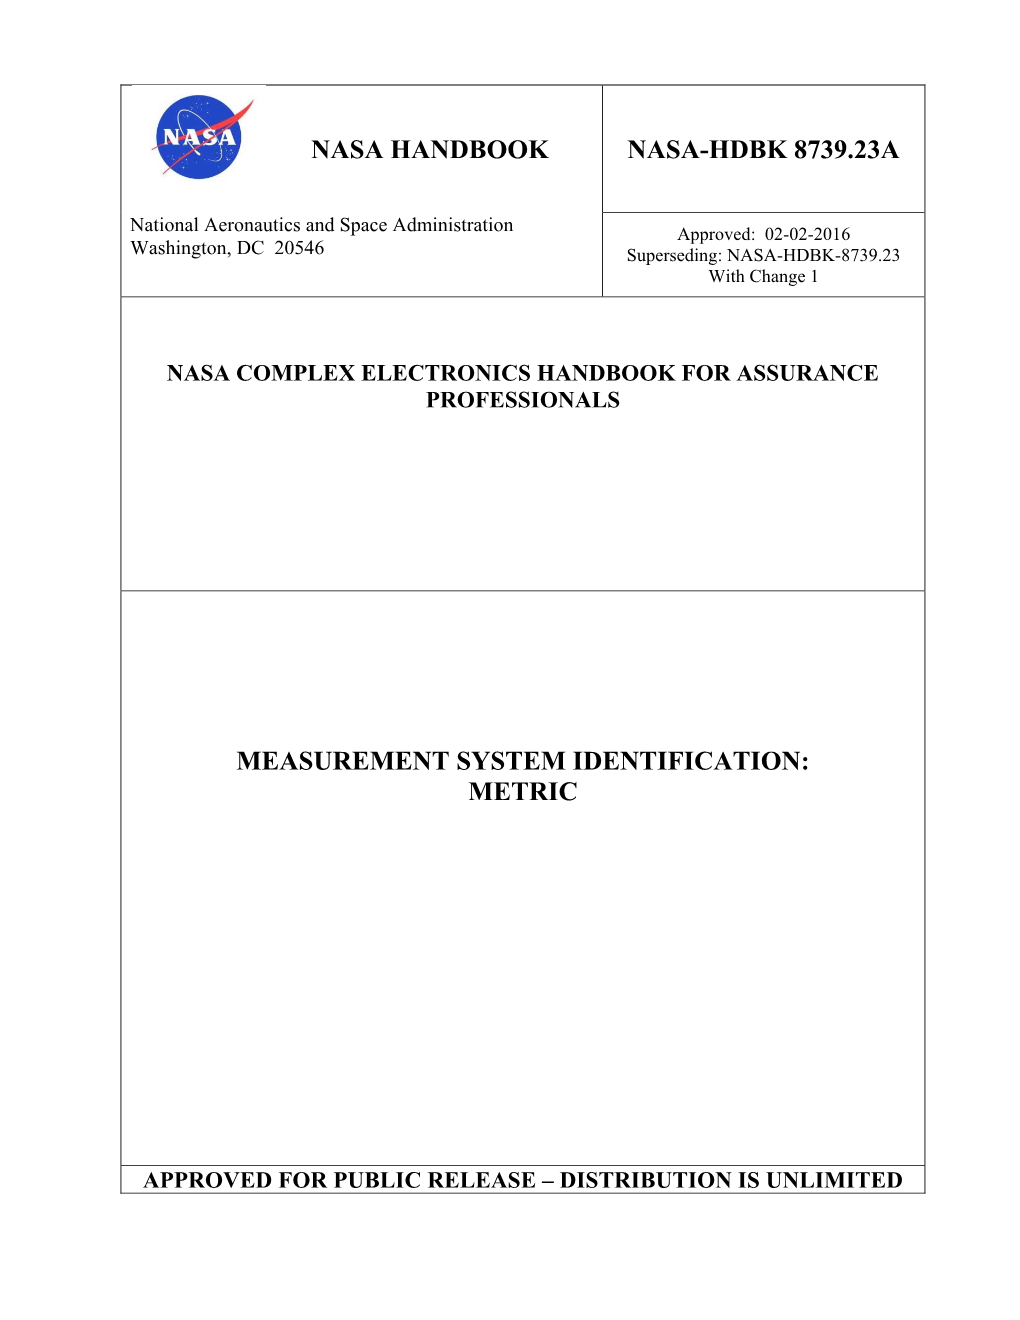 Nasa Handbook Nasa-Hdbk 8739.23A Measurement